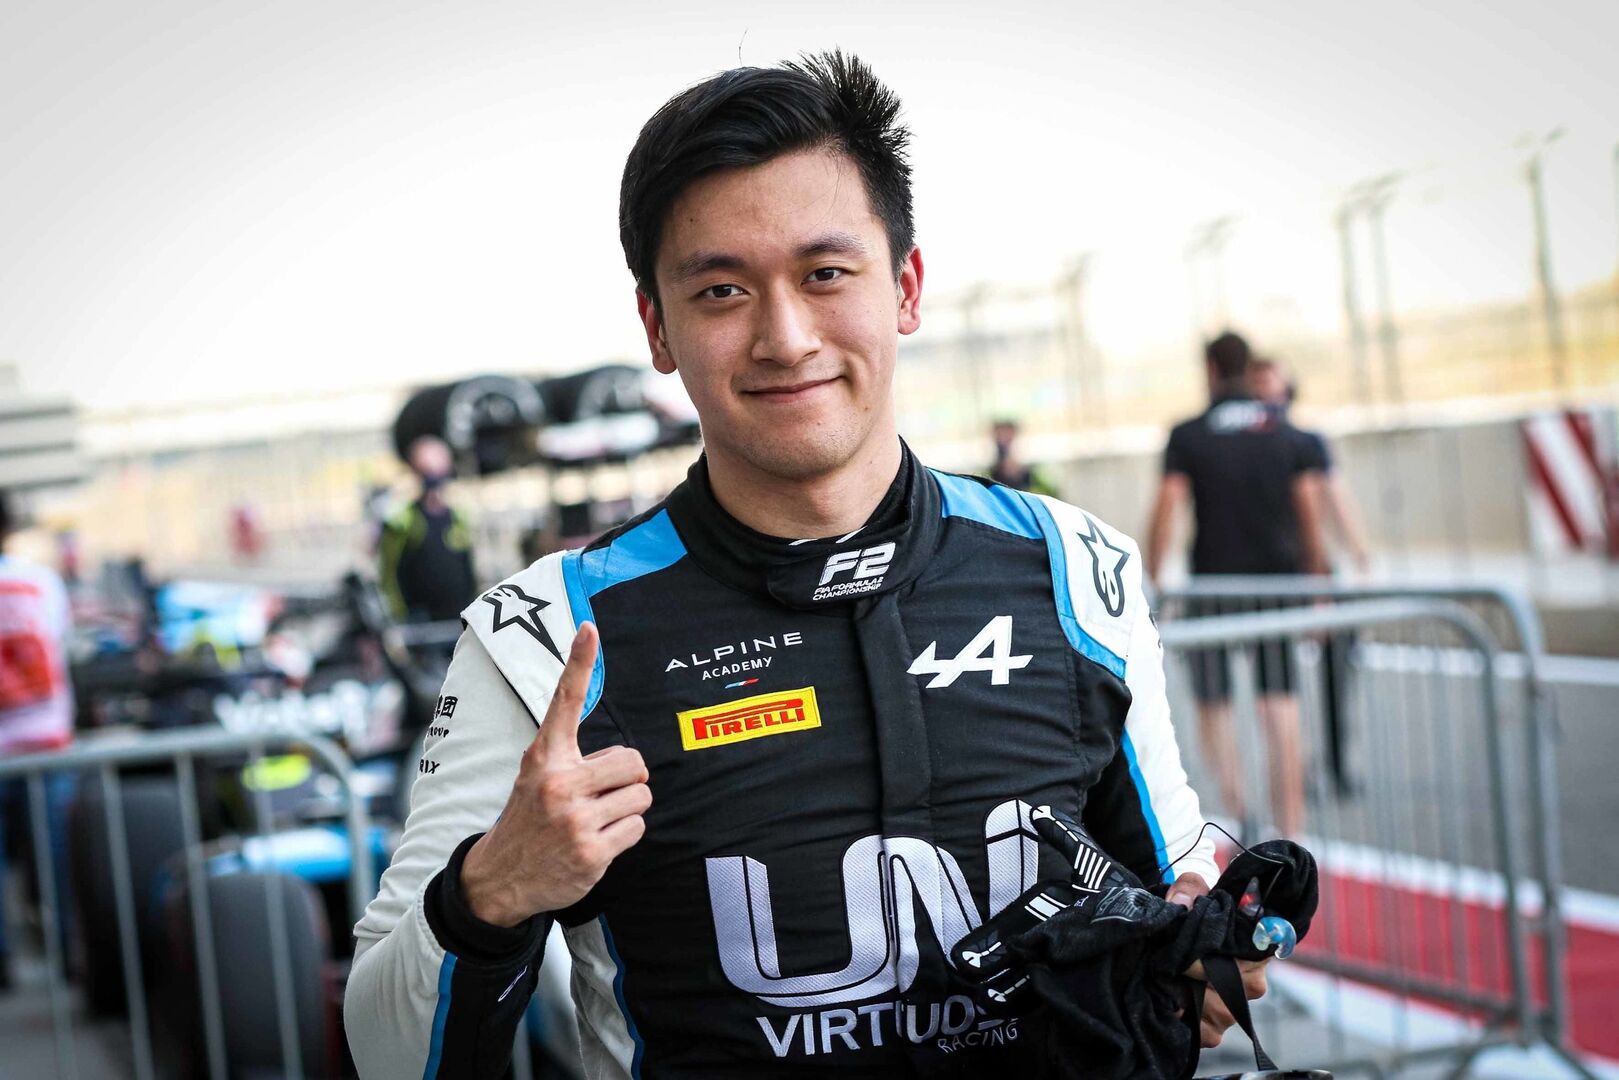 jugar Mezquita arrojar polvo en los ojos Guanyu Zhou, primer piloto chino en la historia de F1